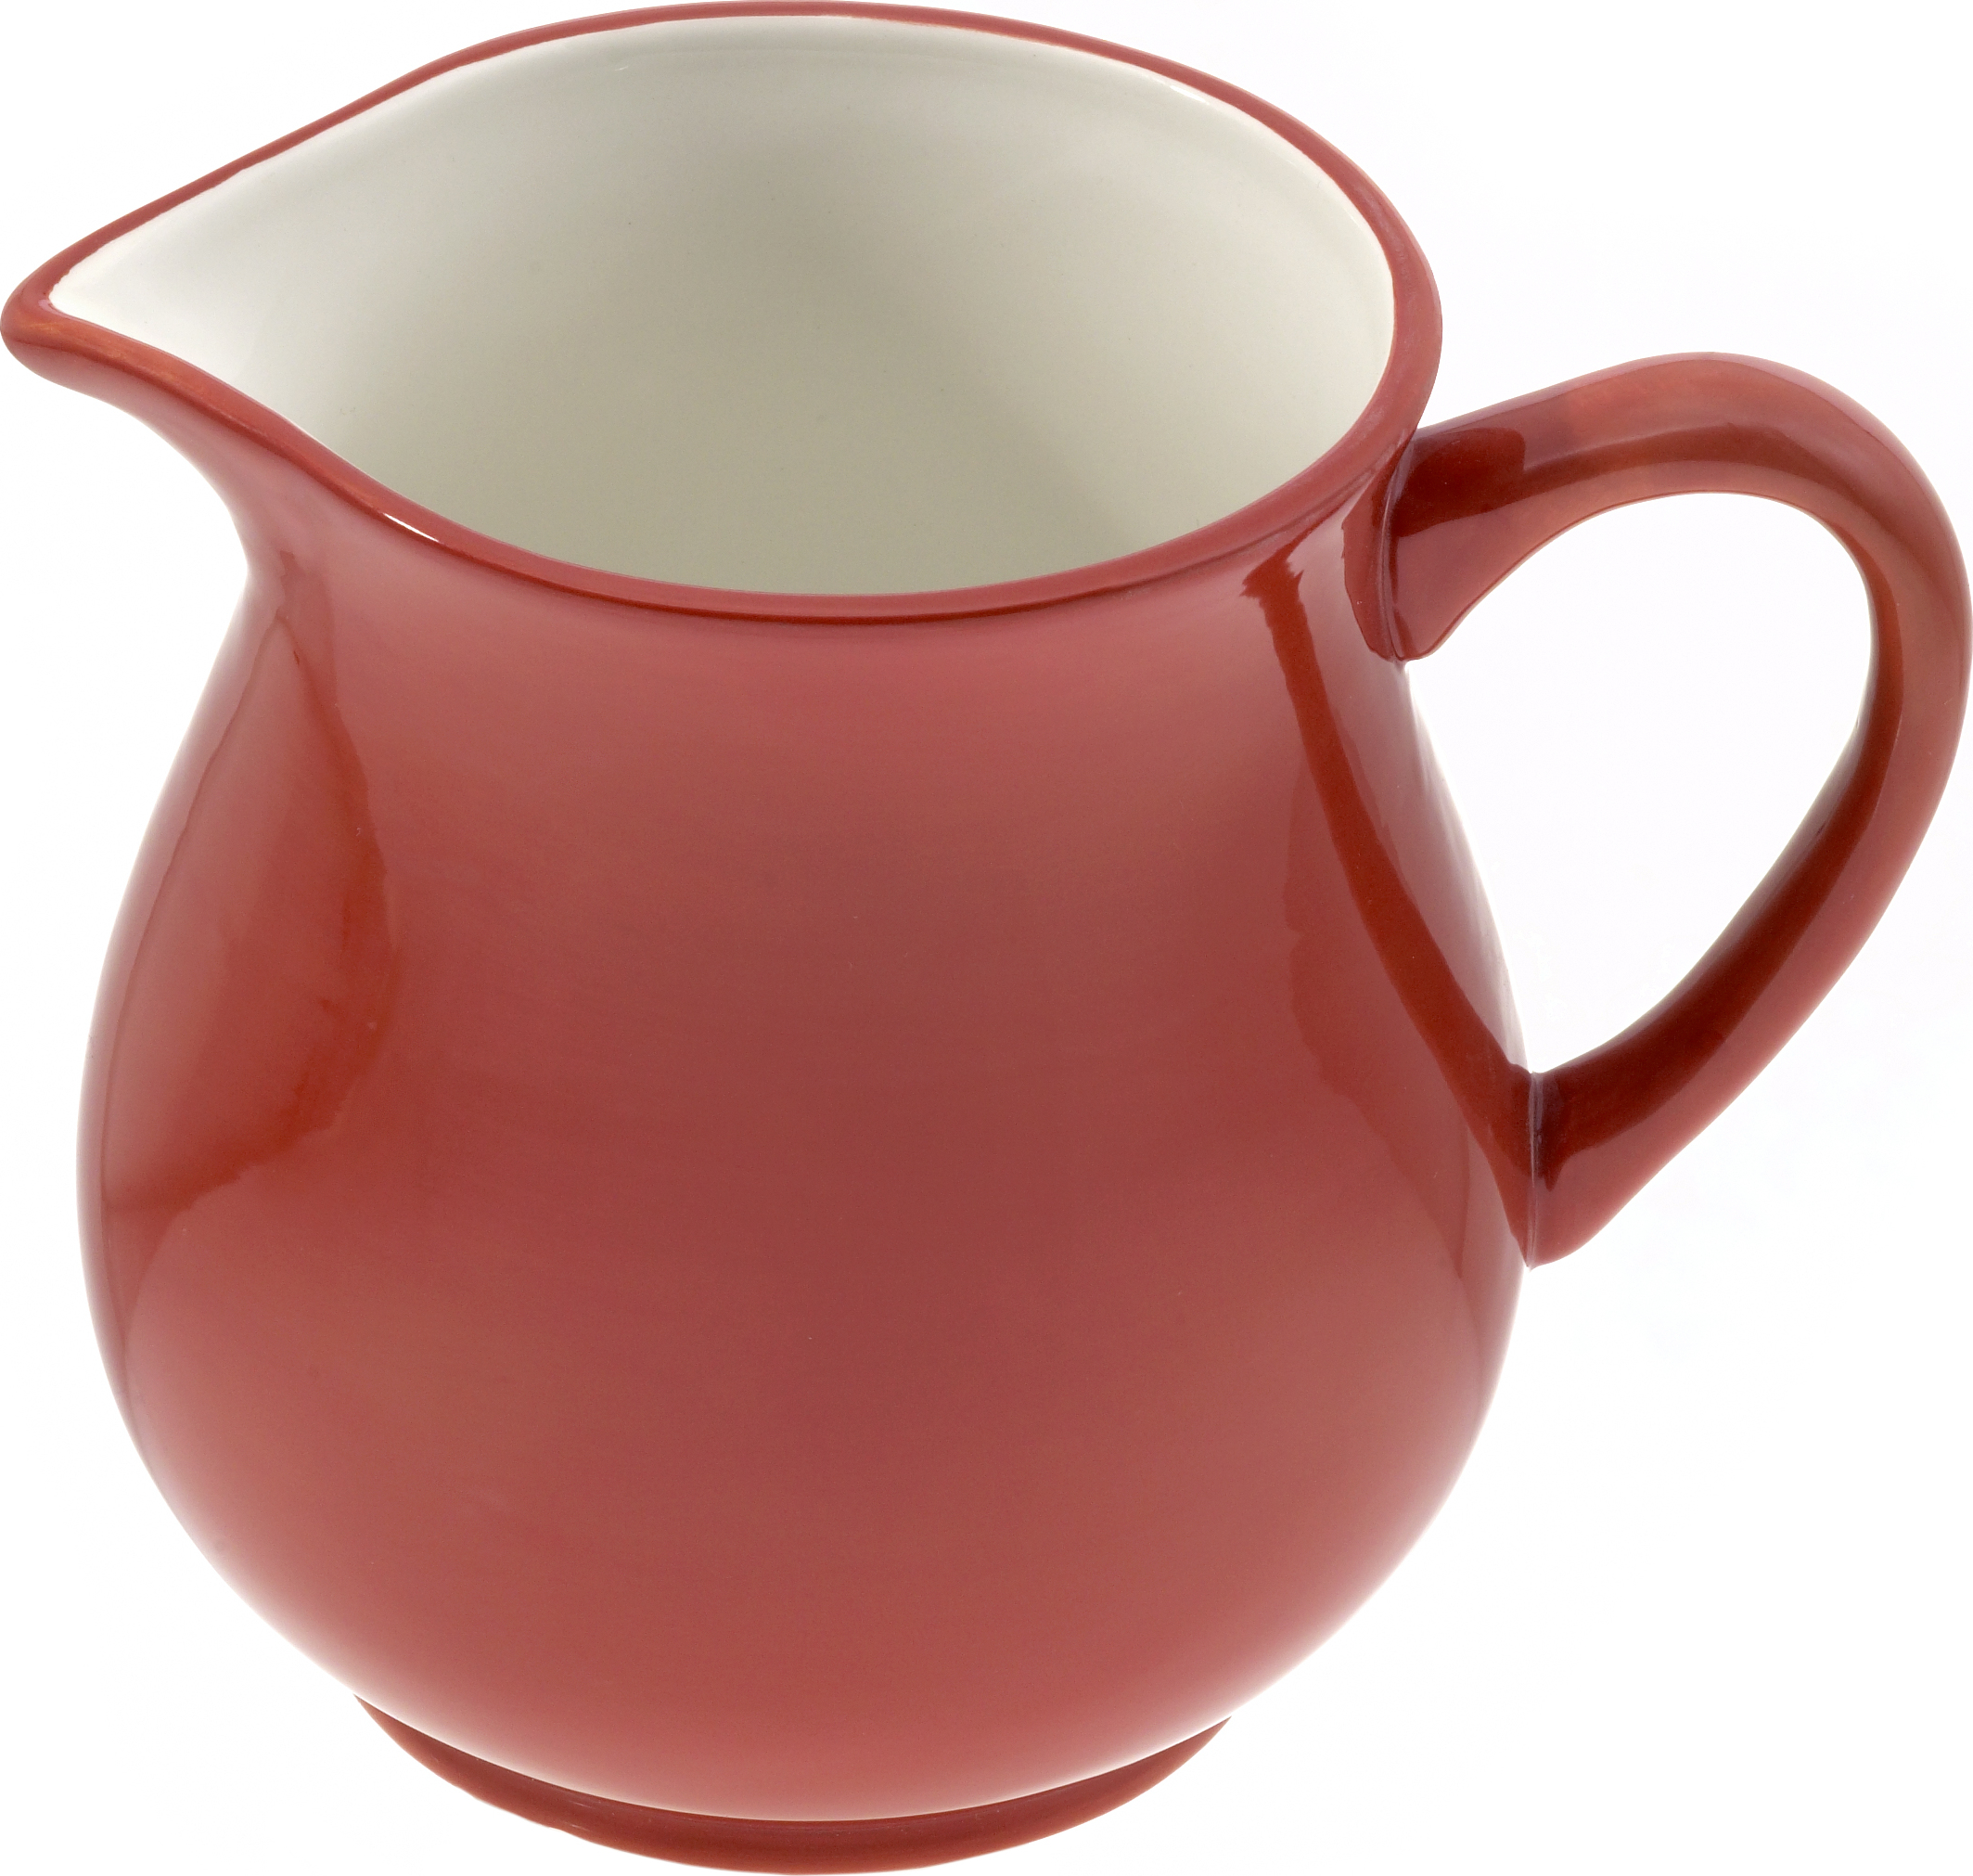 Keramik Krug 1,0 ltr. "rot/weiß" - Magu 112 912